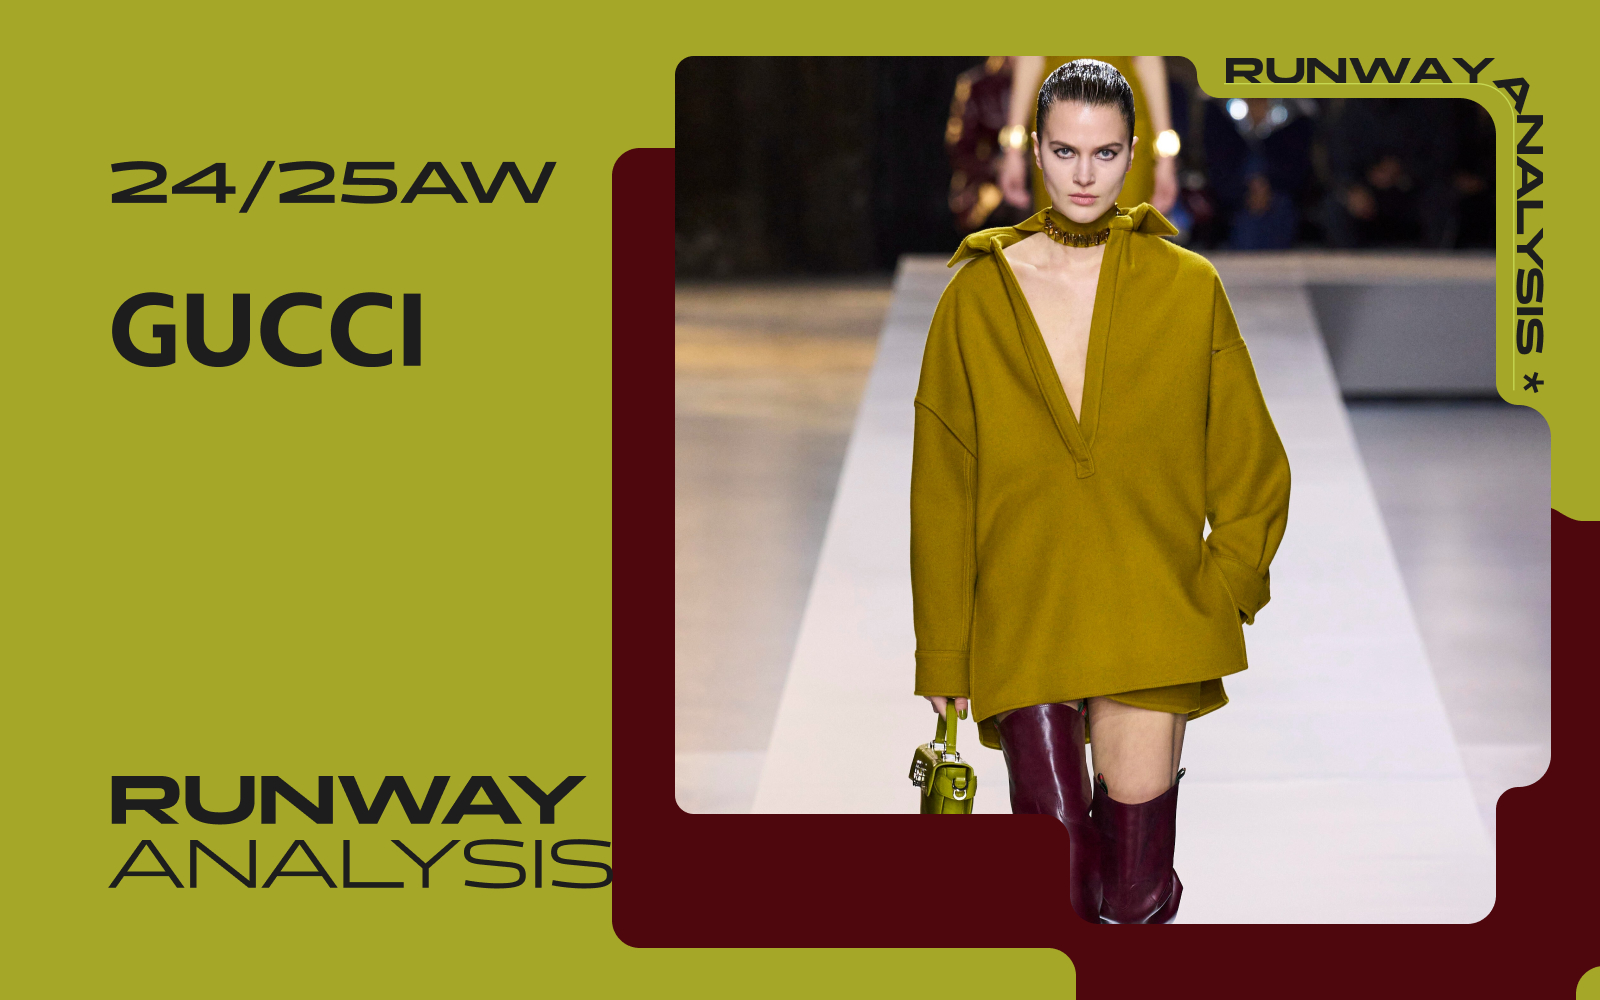 Italian Modern -- The Women's Runway Analysis of Gucci